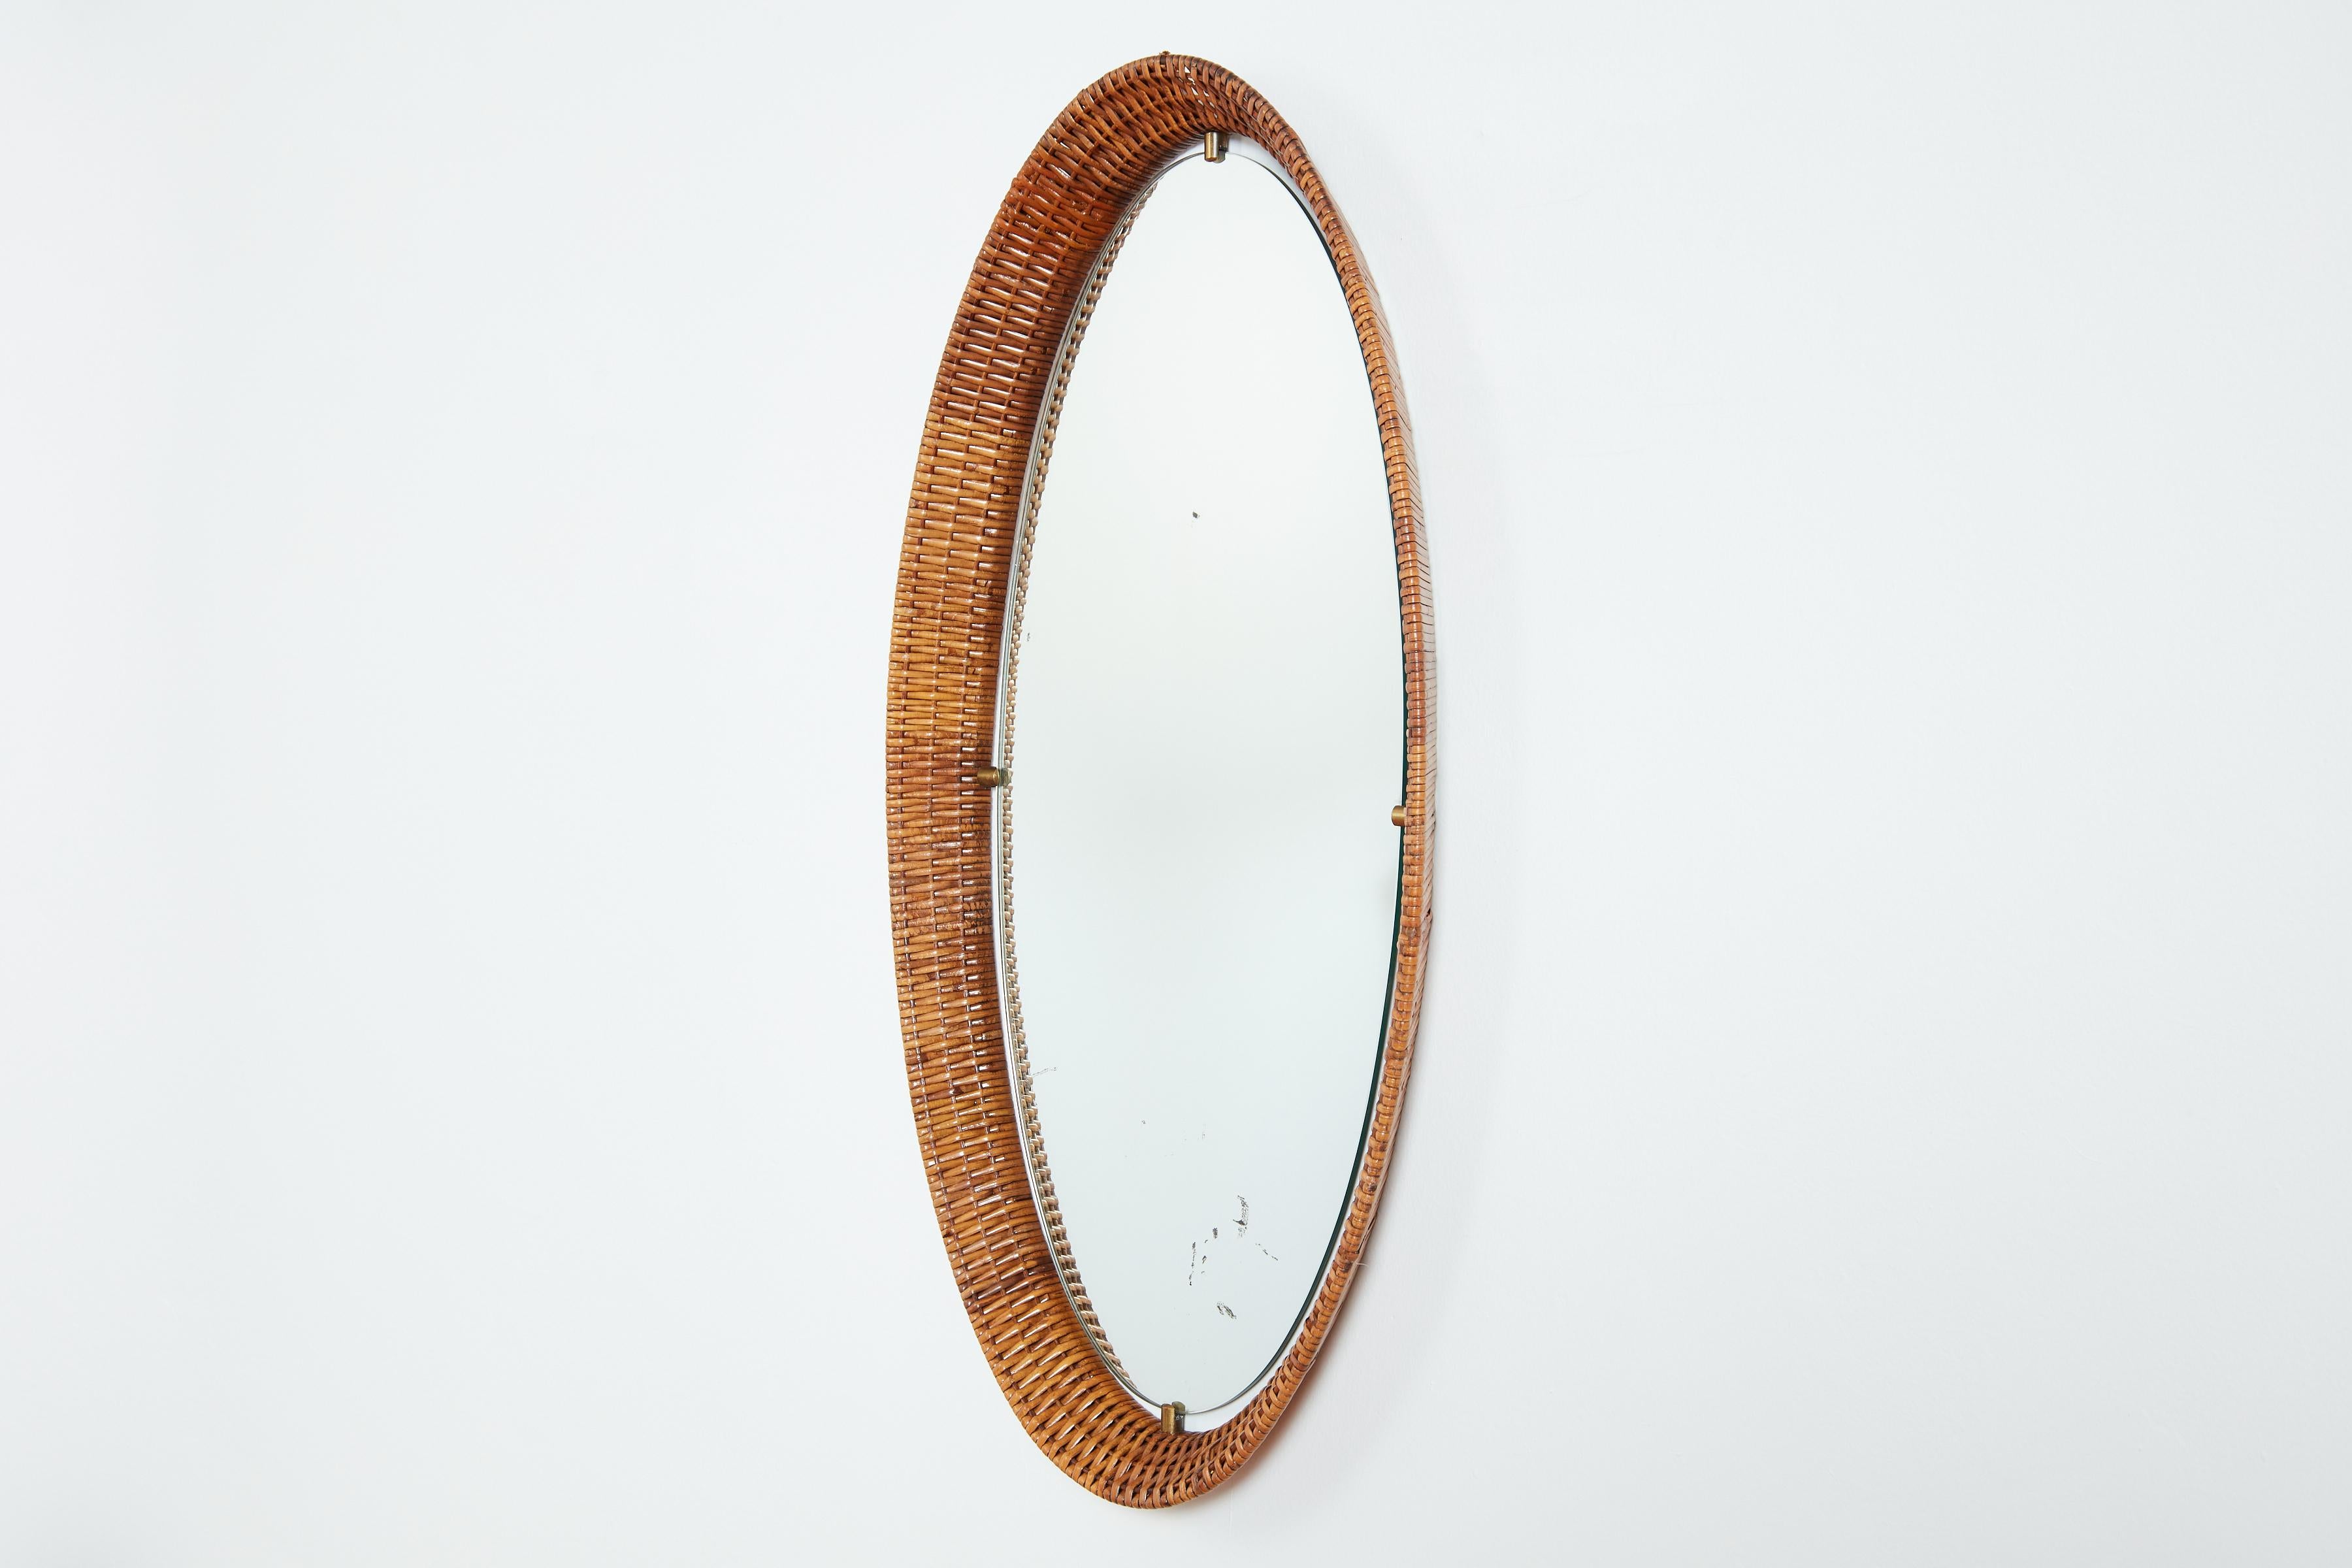 Miroir ovale en osier tressé italien 
Fermoir en laiton avec miroir flottant 
Miroir d'origine très patiné - qui peut être remplacé par un nouveau miroir sur demande.
Italie, années 1950